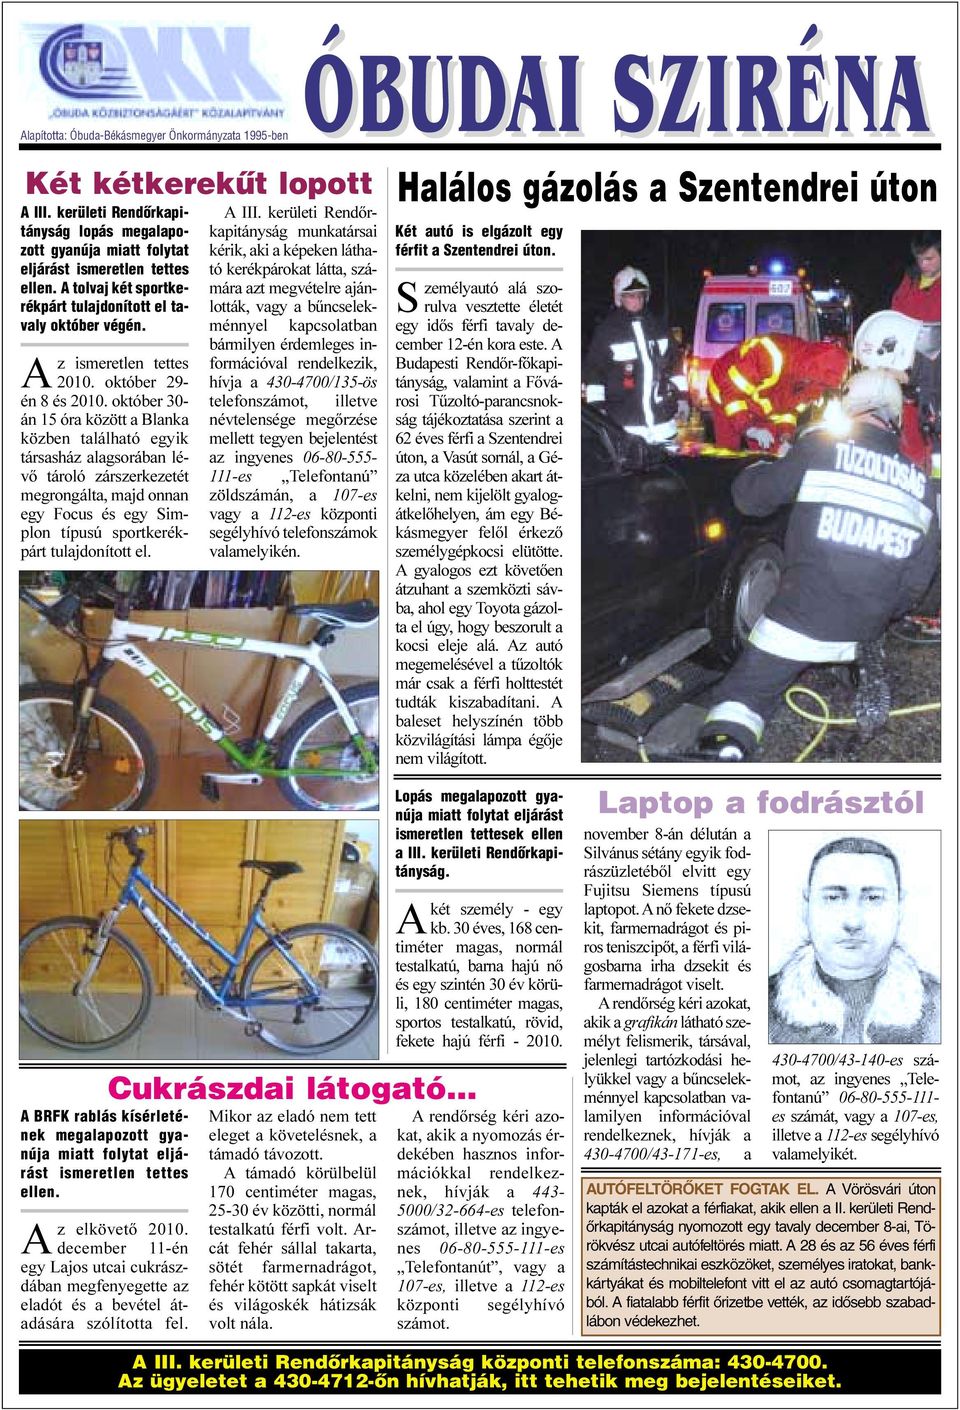 október 30- án 15 óra között a Blanka közben található egyik társasház alagsorában lévõ tároló zárszerkezetét megrongálta, majd onnan egy Focus és egy Simplon típusú sportkerékpárt tulajdonított el.